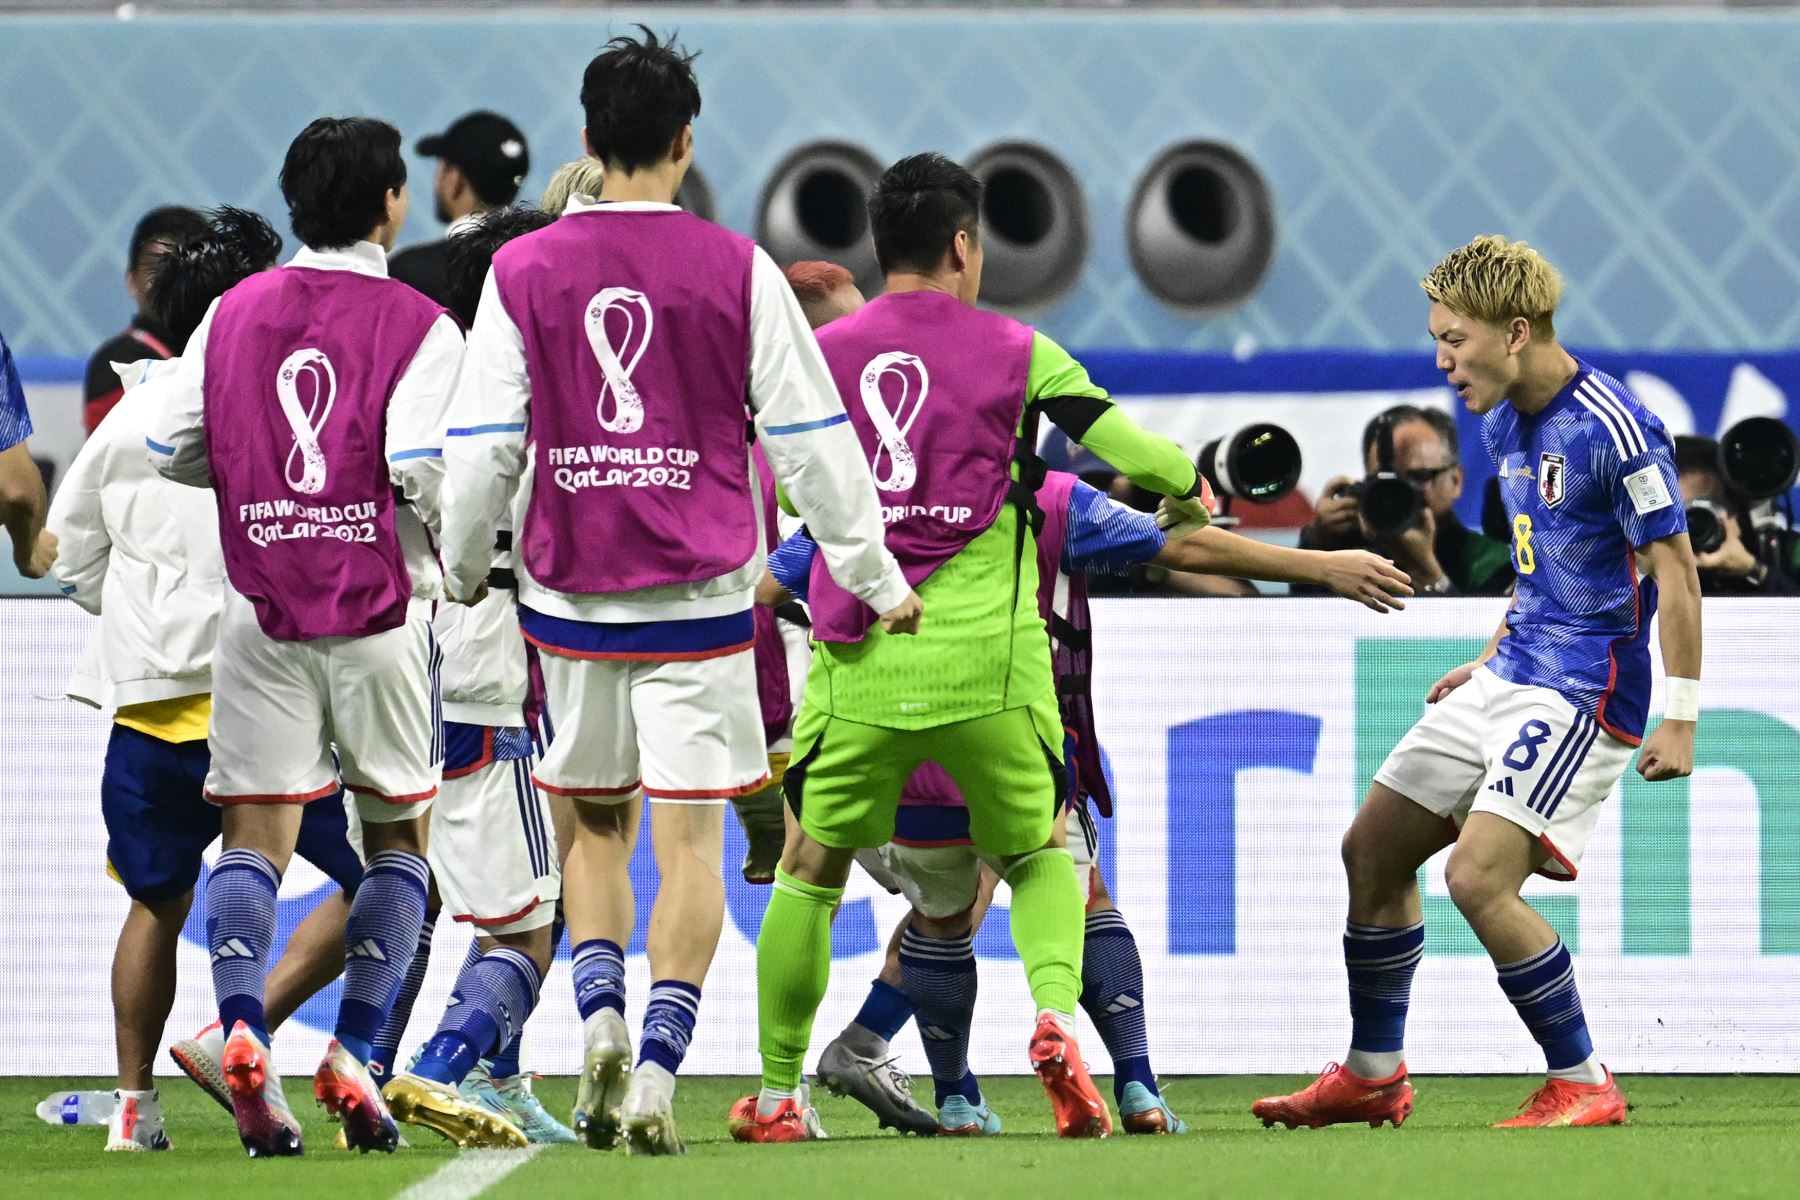 El mediocampista de Japón Ritsu Doan celebra marcar el primer gol de su equipo durante el partido de fútbol del Grupo E de la Copa Mundial de Qatar 2022 entre Japón y España en el Estadio Internacional Khalifa en Doha el 1 de diciembre de 2022.
Foto: AFP